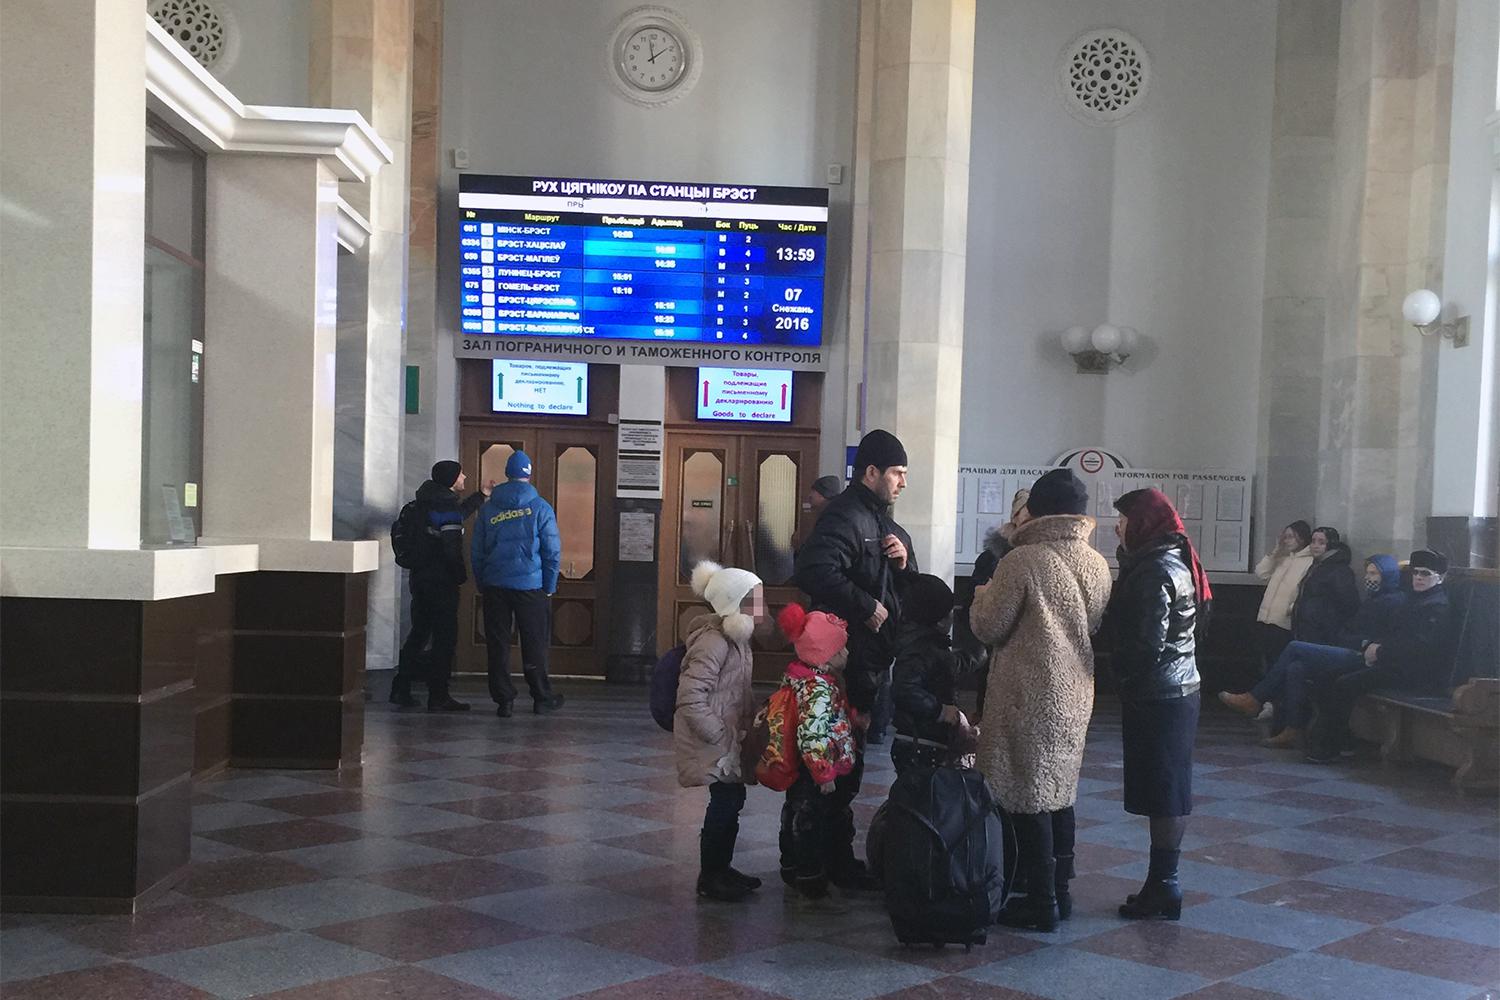 Osoby ubiegające się o azyl w sali dworca kolejowego w Brześciu po powrocie pociągiem o godzinie 13.46 z Terespola, gdzie ich prośby o otrzymanie azylu w Polsce zostały odrzucone. Brześć, Białoruś, 7 grudnia 2016.